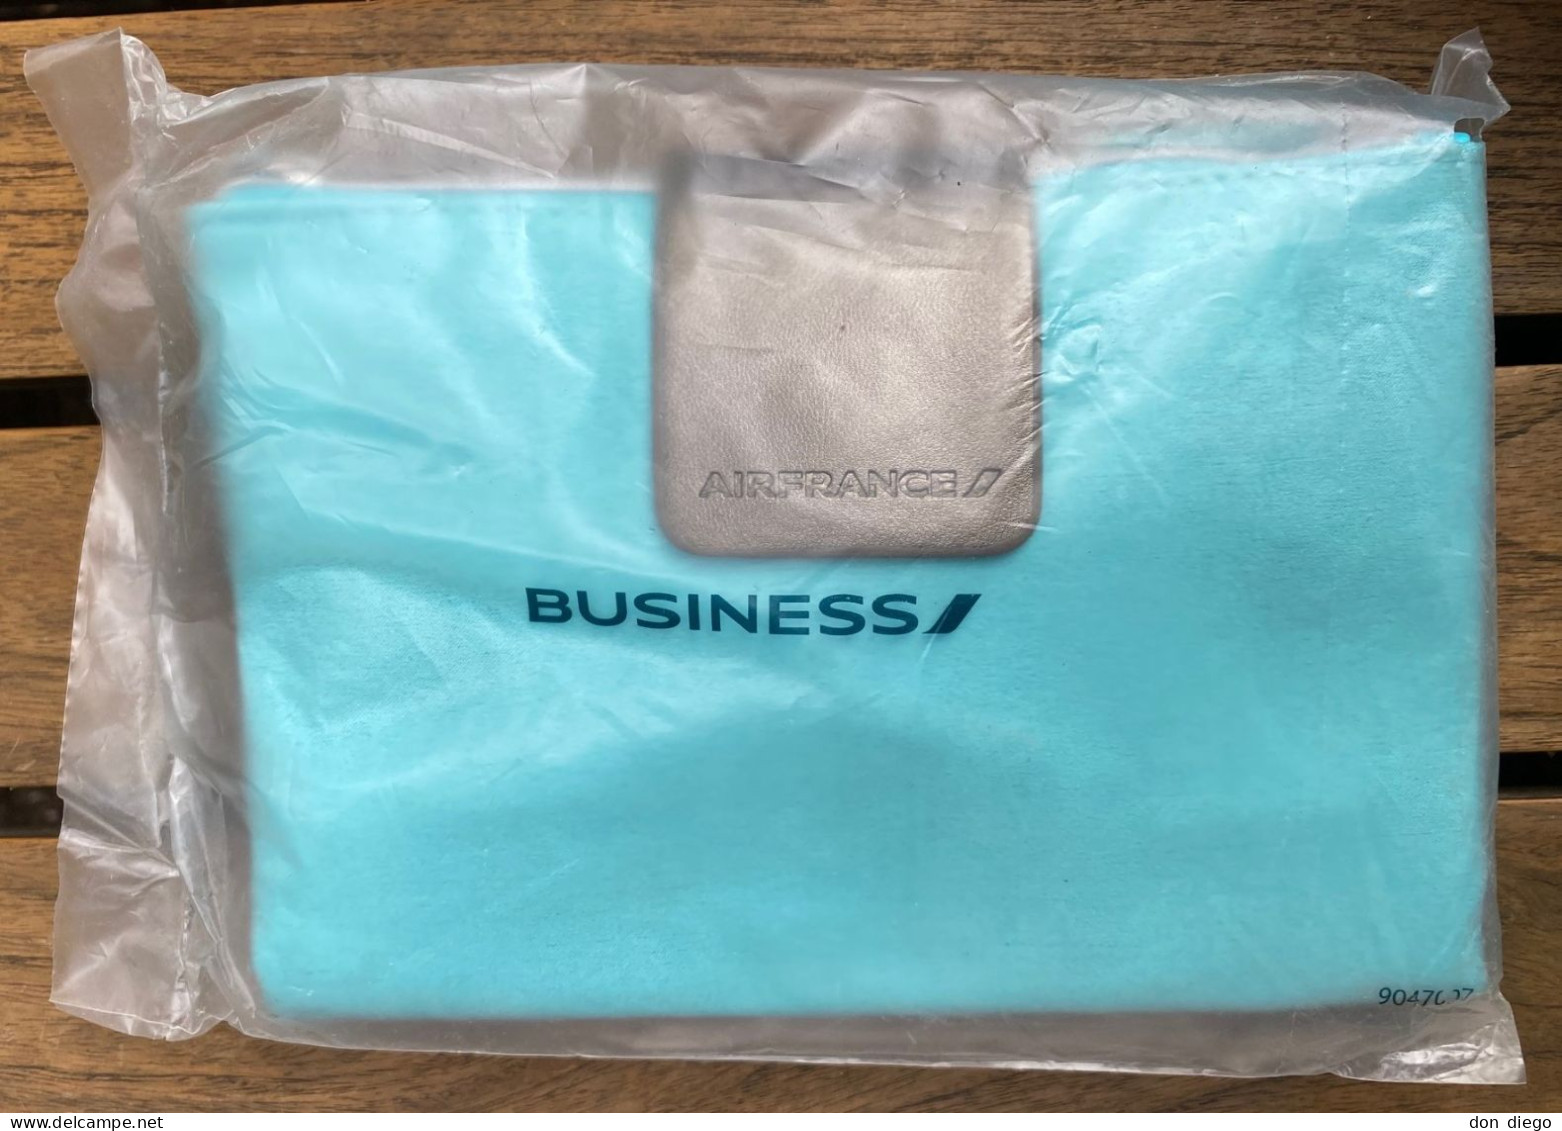 Trousse De Toilette Amenity Kit Bleue Blue Air France Business Class / Contenu Intact / Sous Emballage D'origine Scellé - Giveaways